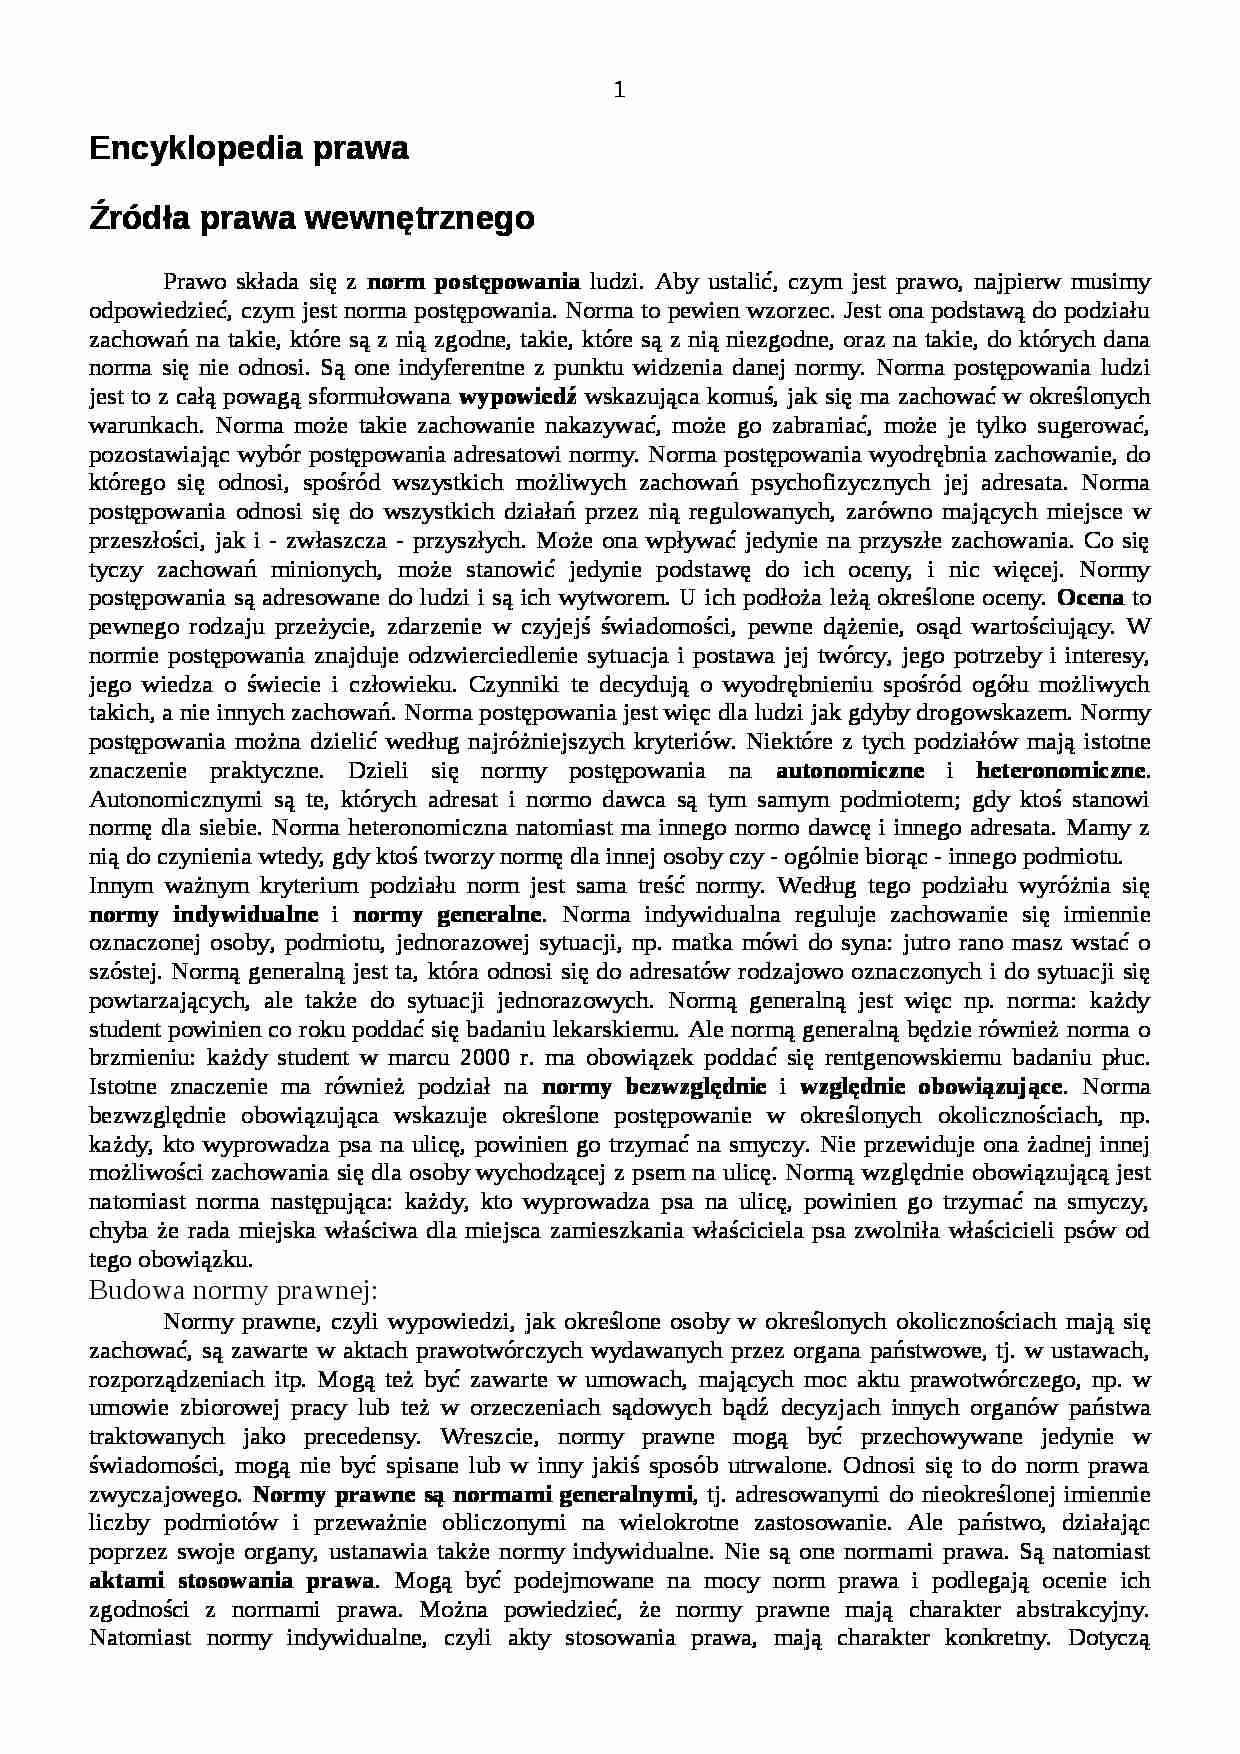 Encyklopedia Prawa - wyklad 10 [20.11.2001] - strona 1